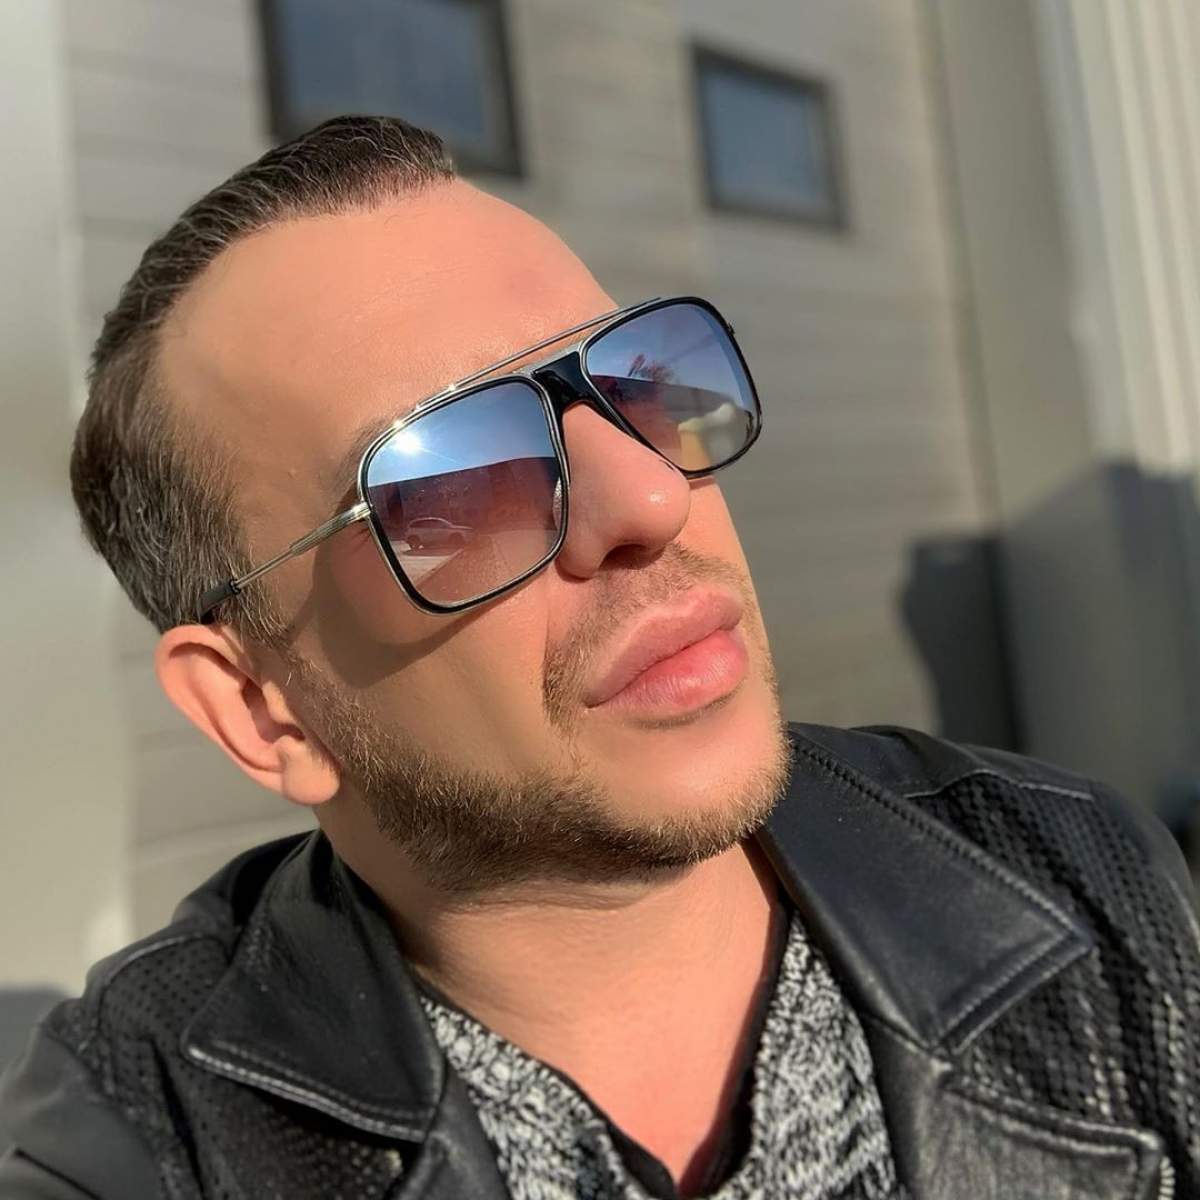 Stephan Pelger și-a făcut un selfie, în lumina soarelui, purtând ochelari